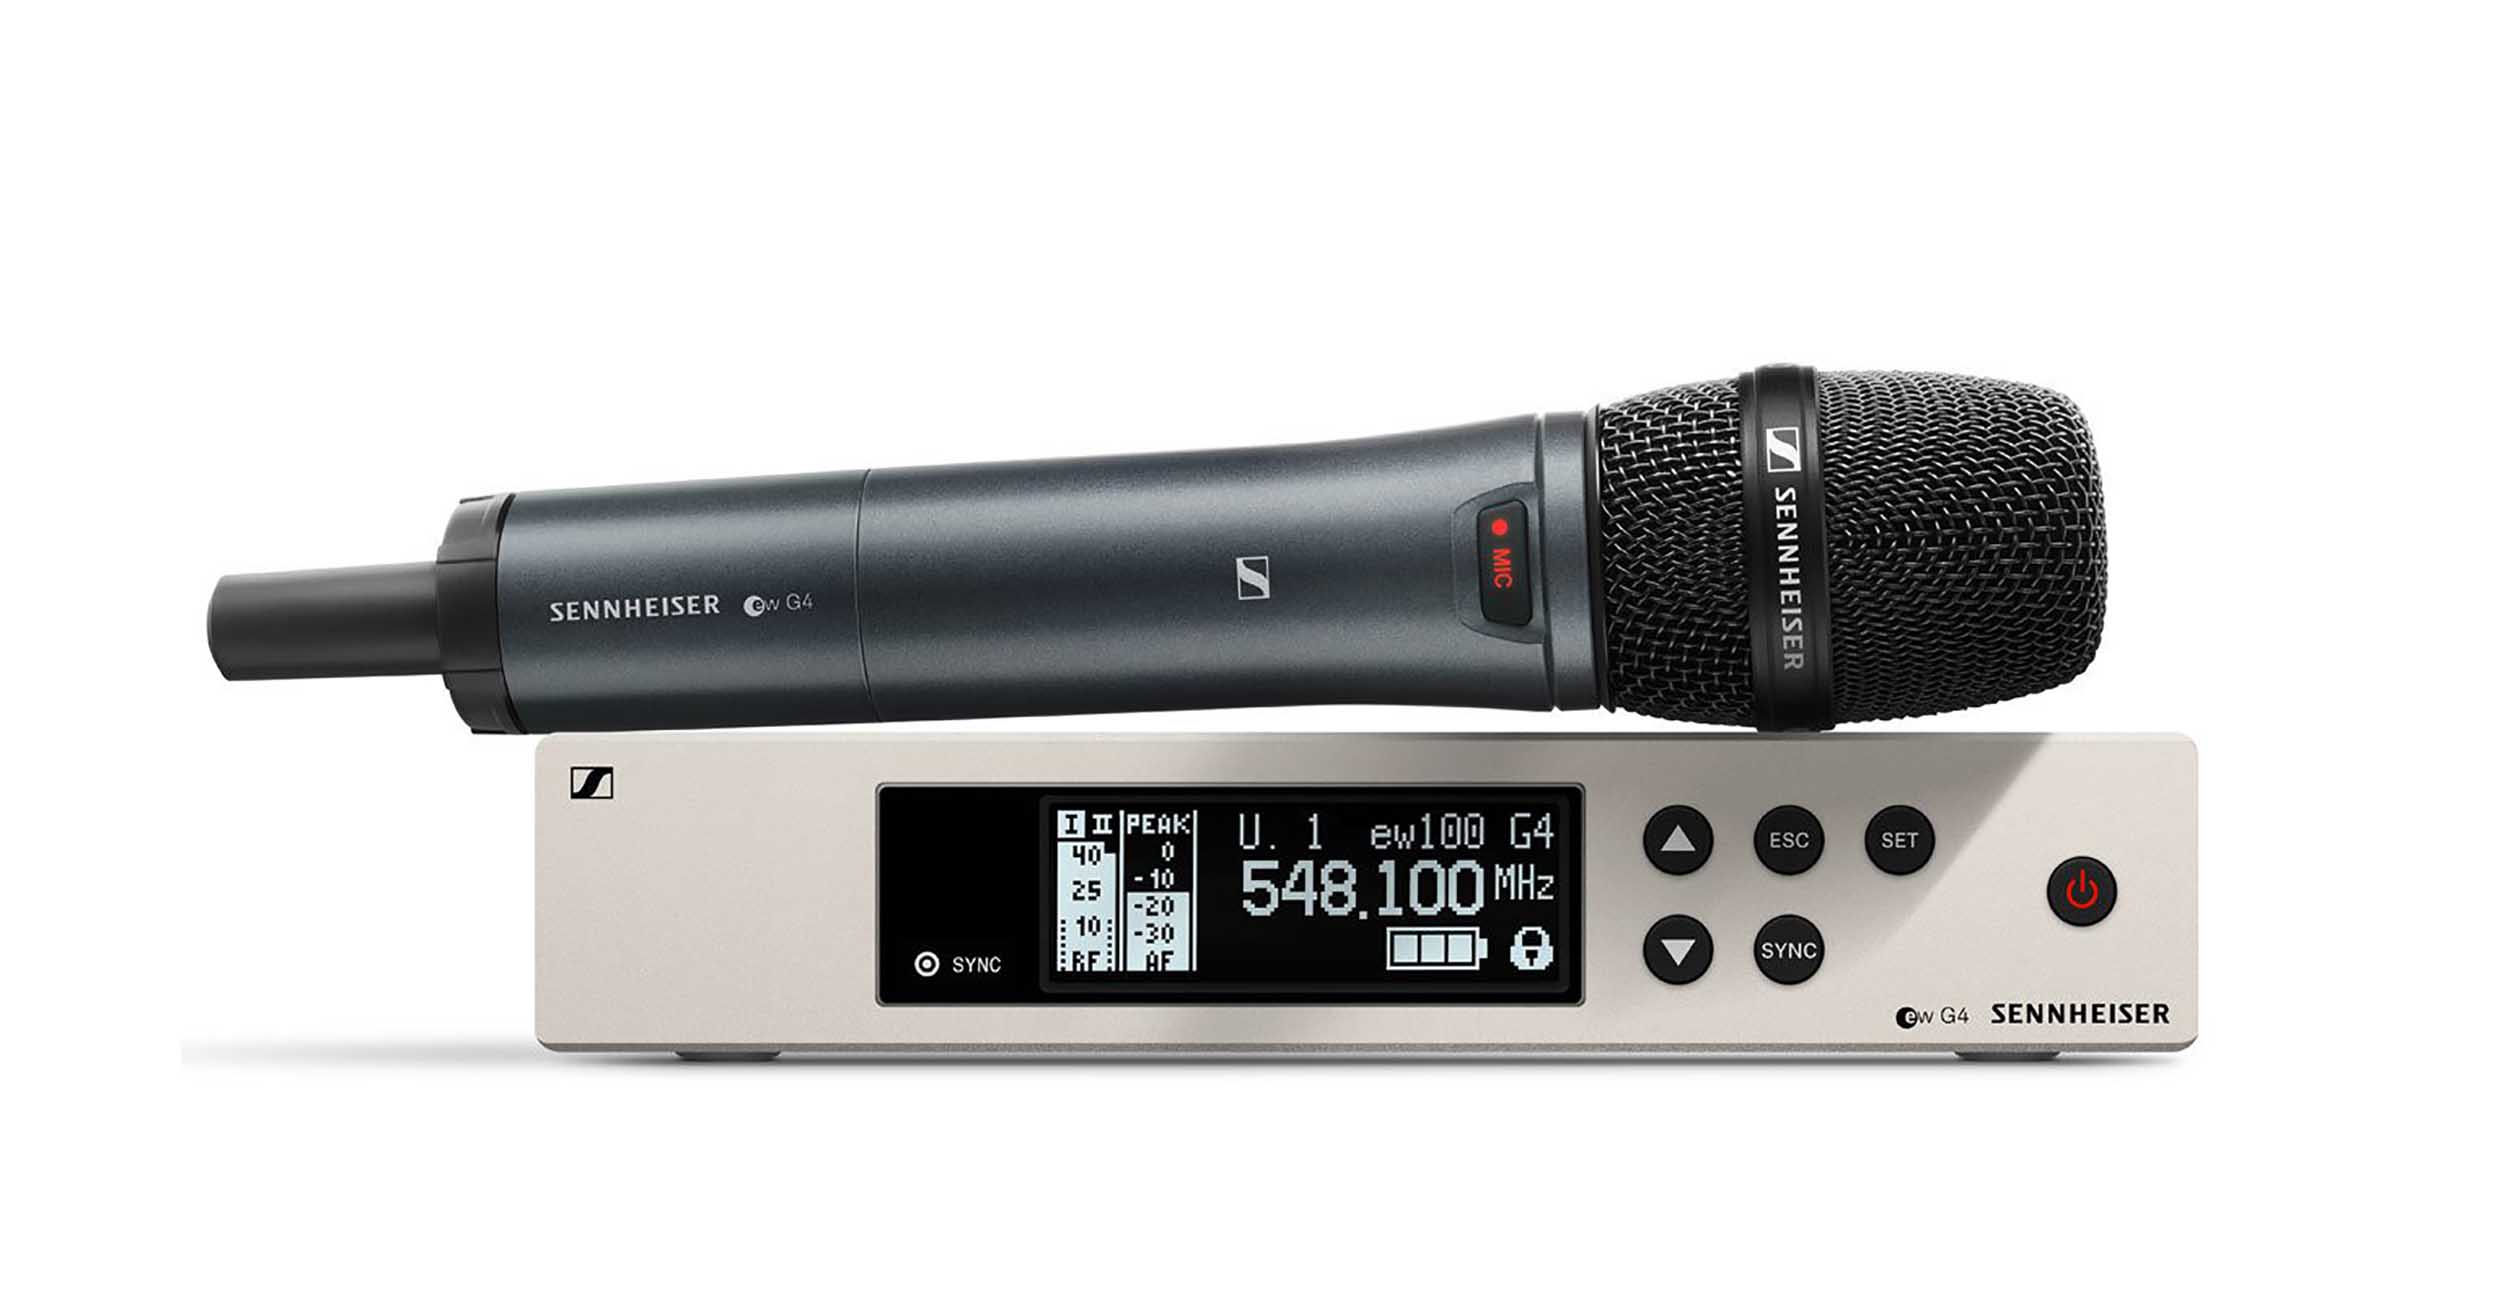 Sennheiser Wireless Dynamic Cardioid Microphone System - Hollywood DJ